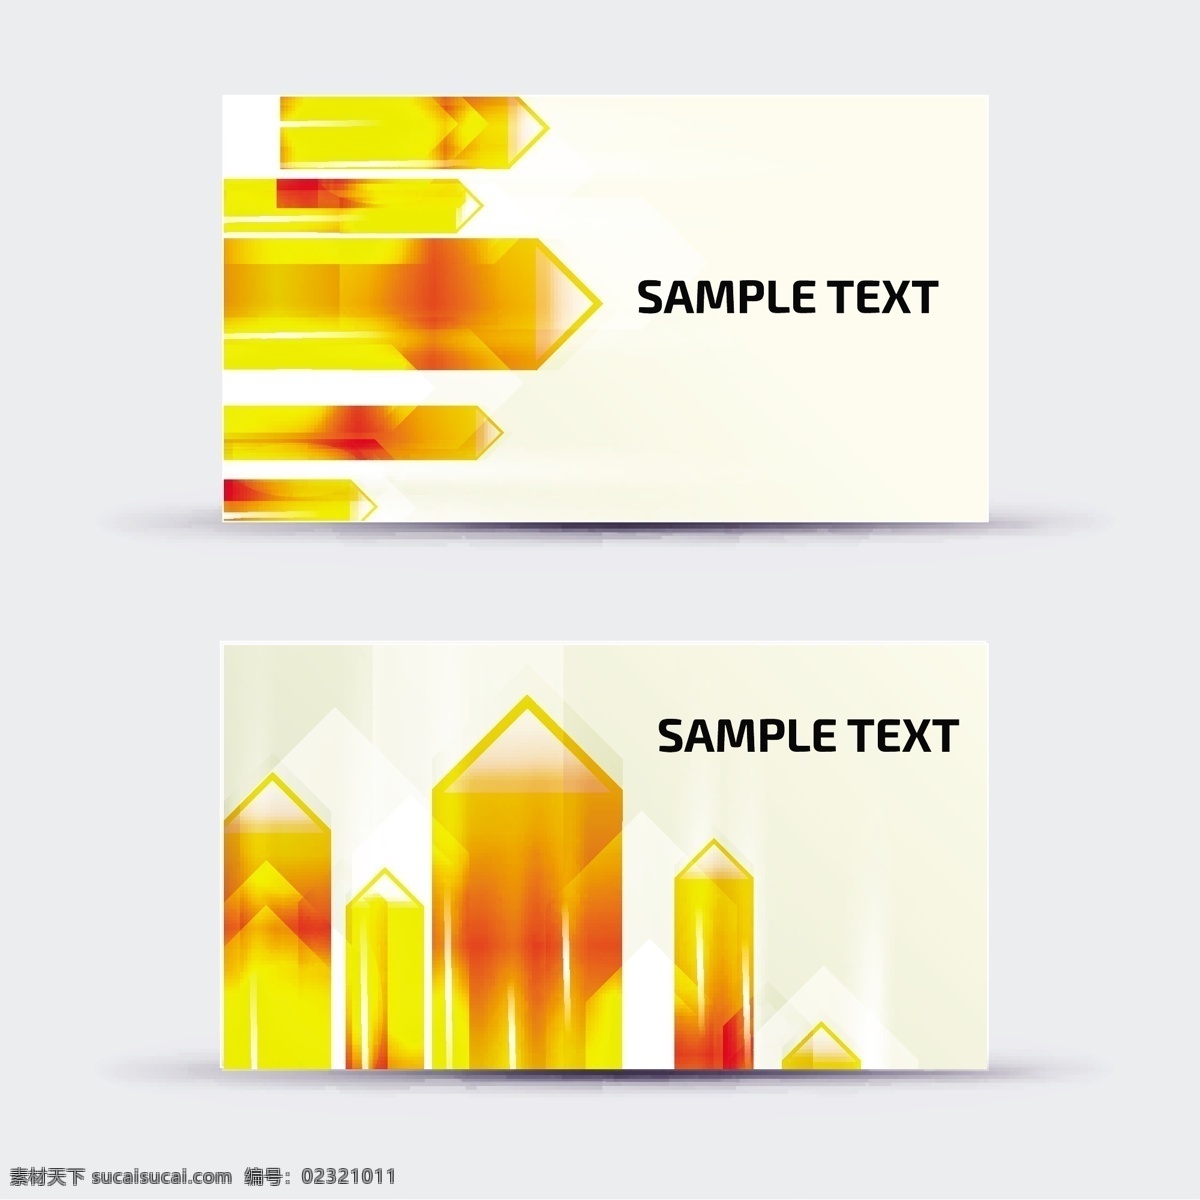 梦幻 水晶 名片设计 模板下载 名片模板 创意名片设计 时尚名片 名片背景 卡片 名片卡片 矢量素材 白色